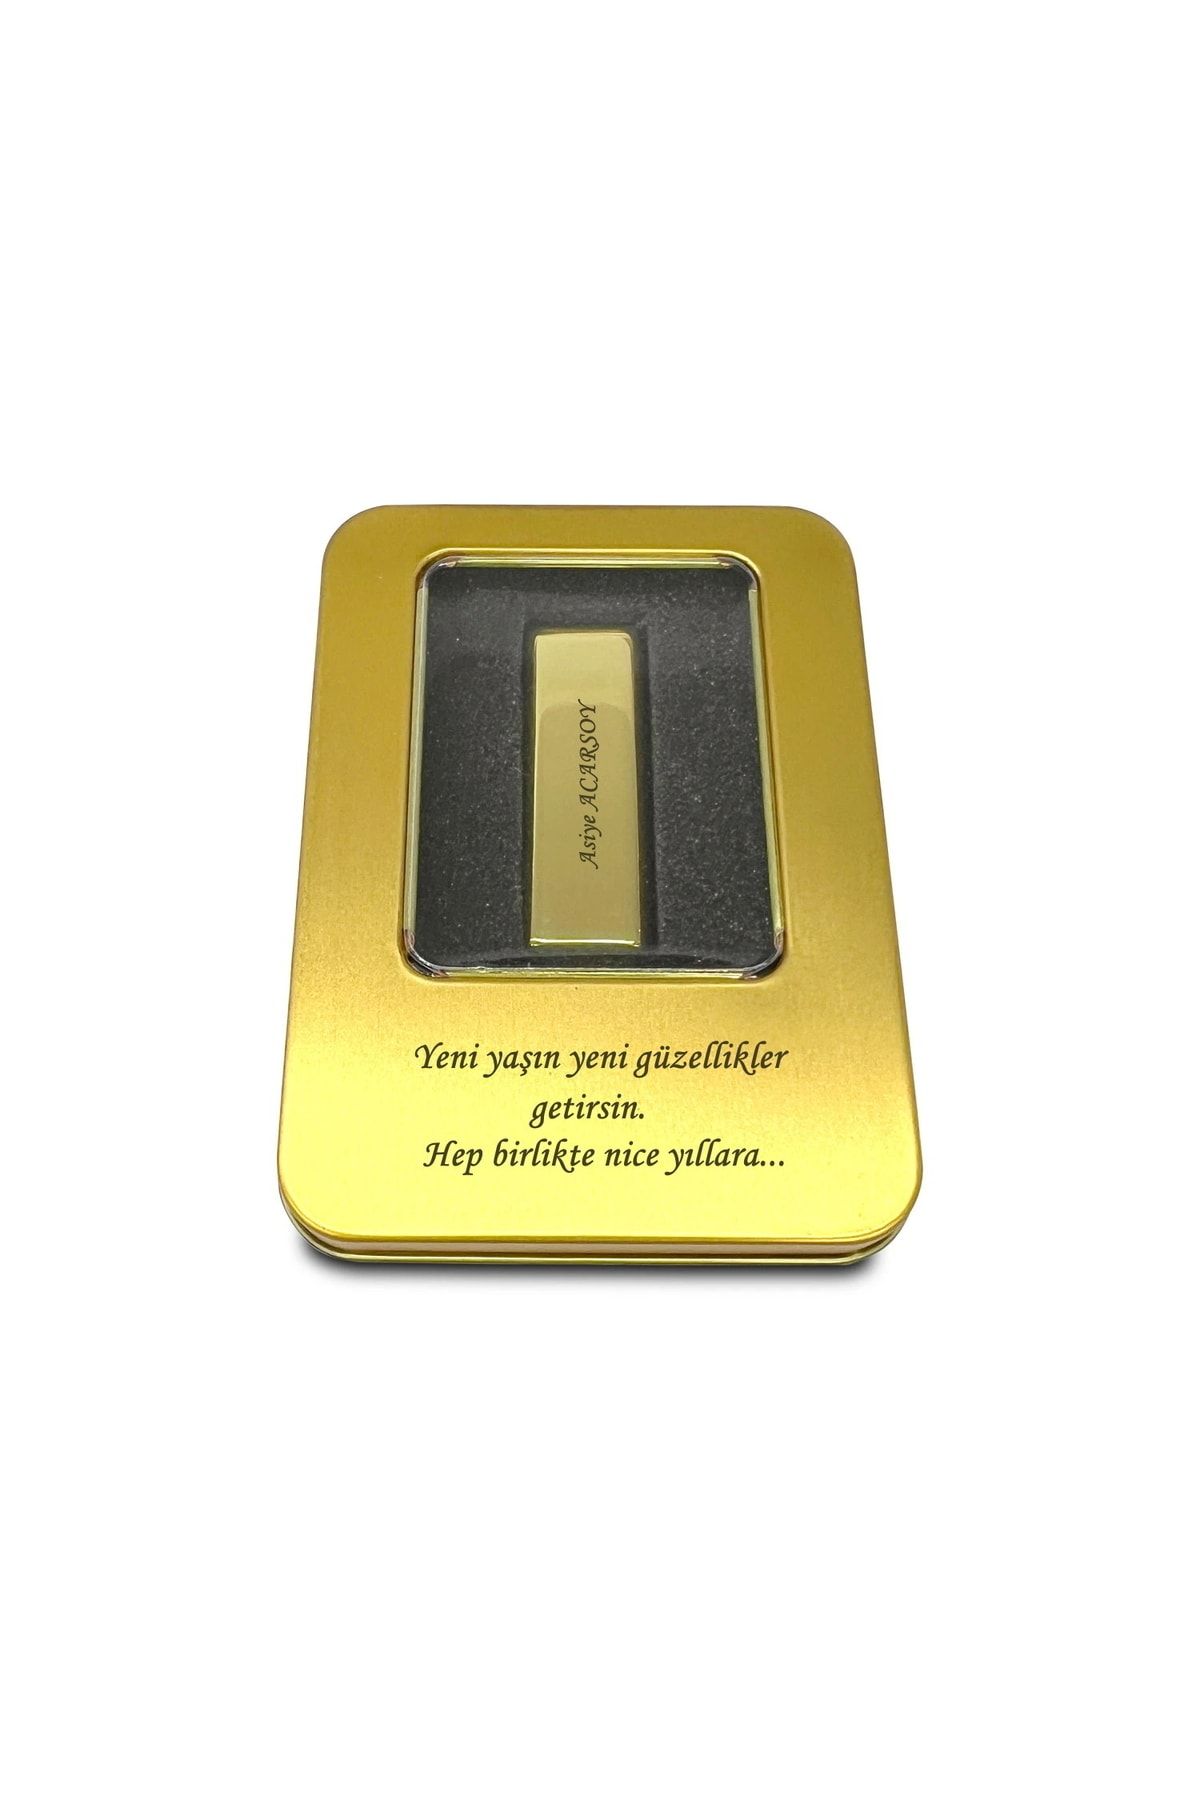 HediyesiBizden Kişiye Özel Isim Baskılı Metal Gövdeli Metal Kutulu Gold Altın Külçe 64gb Usb Bellek